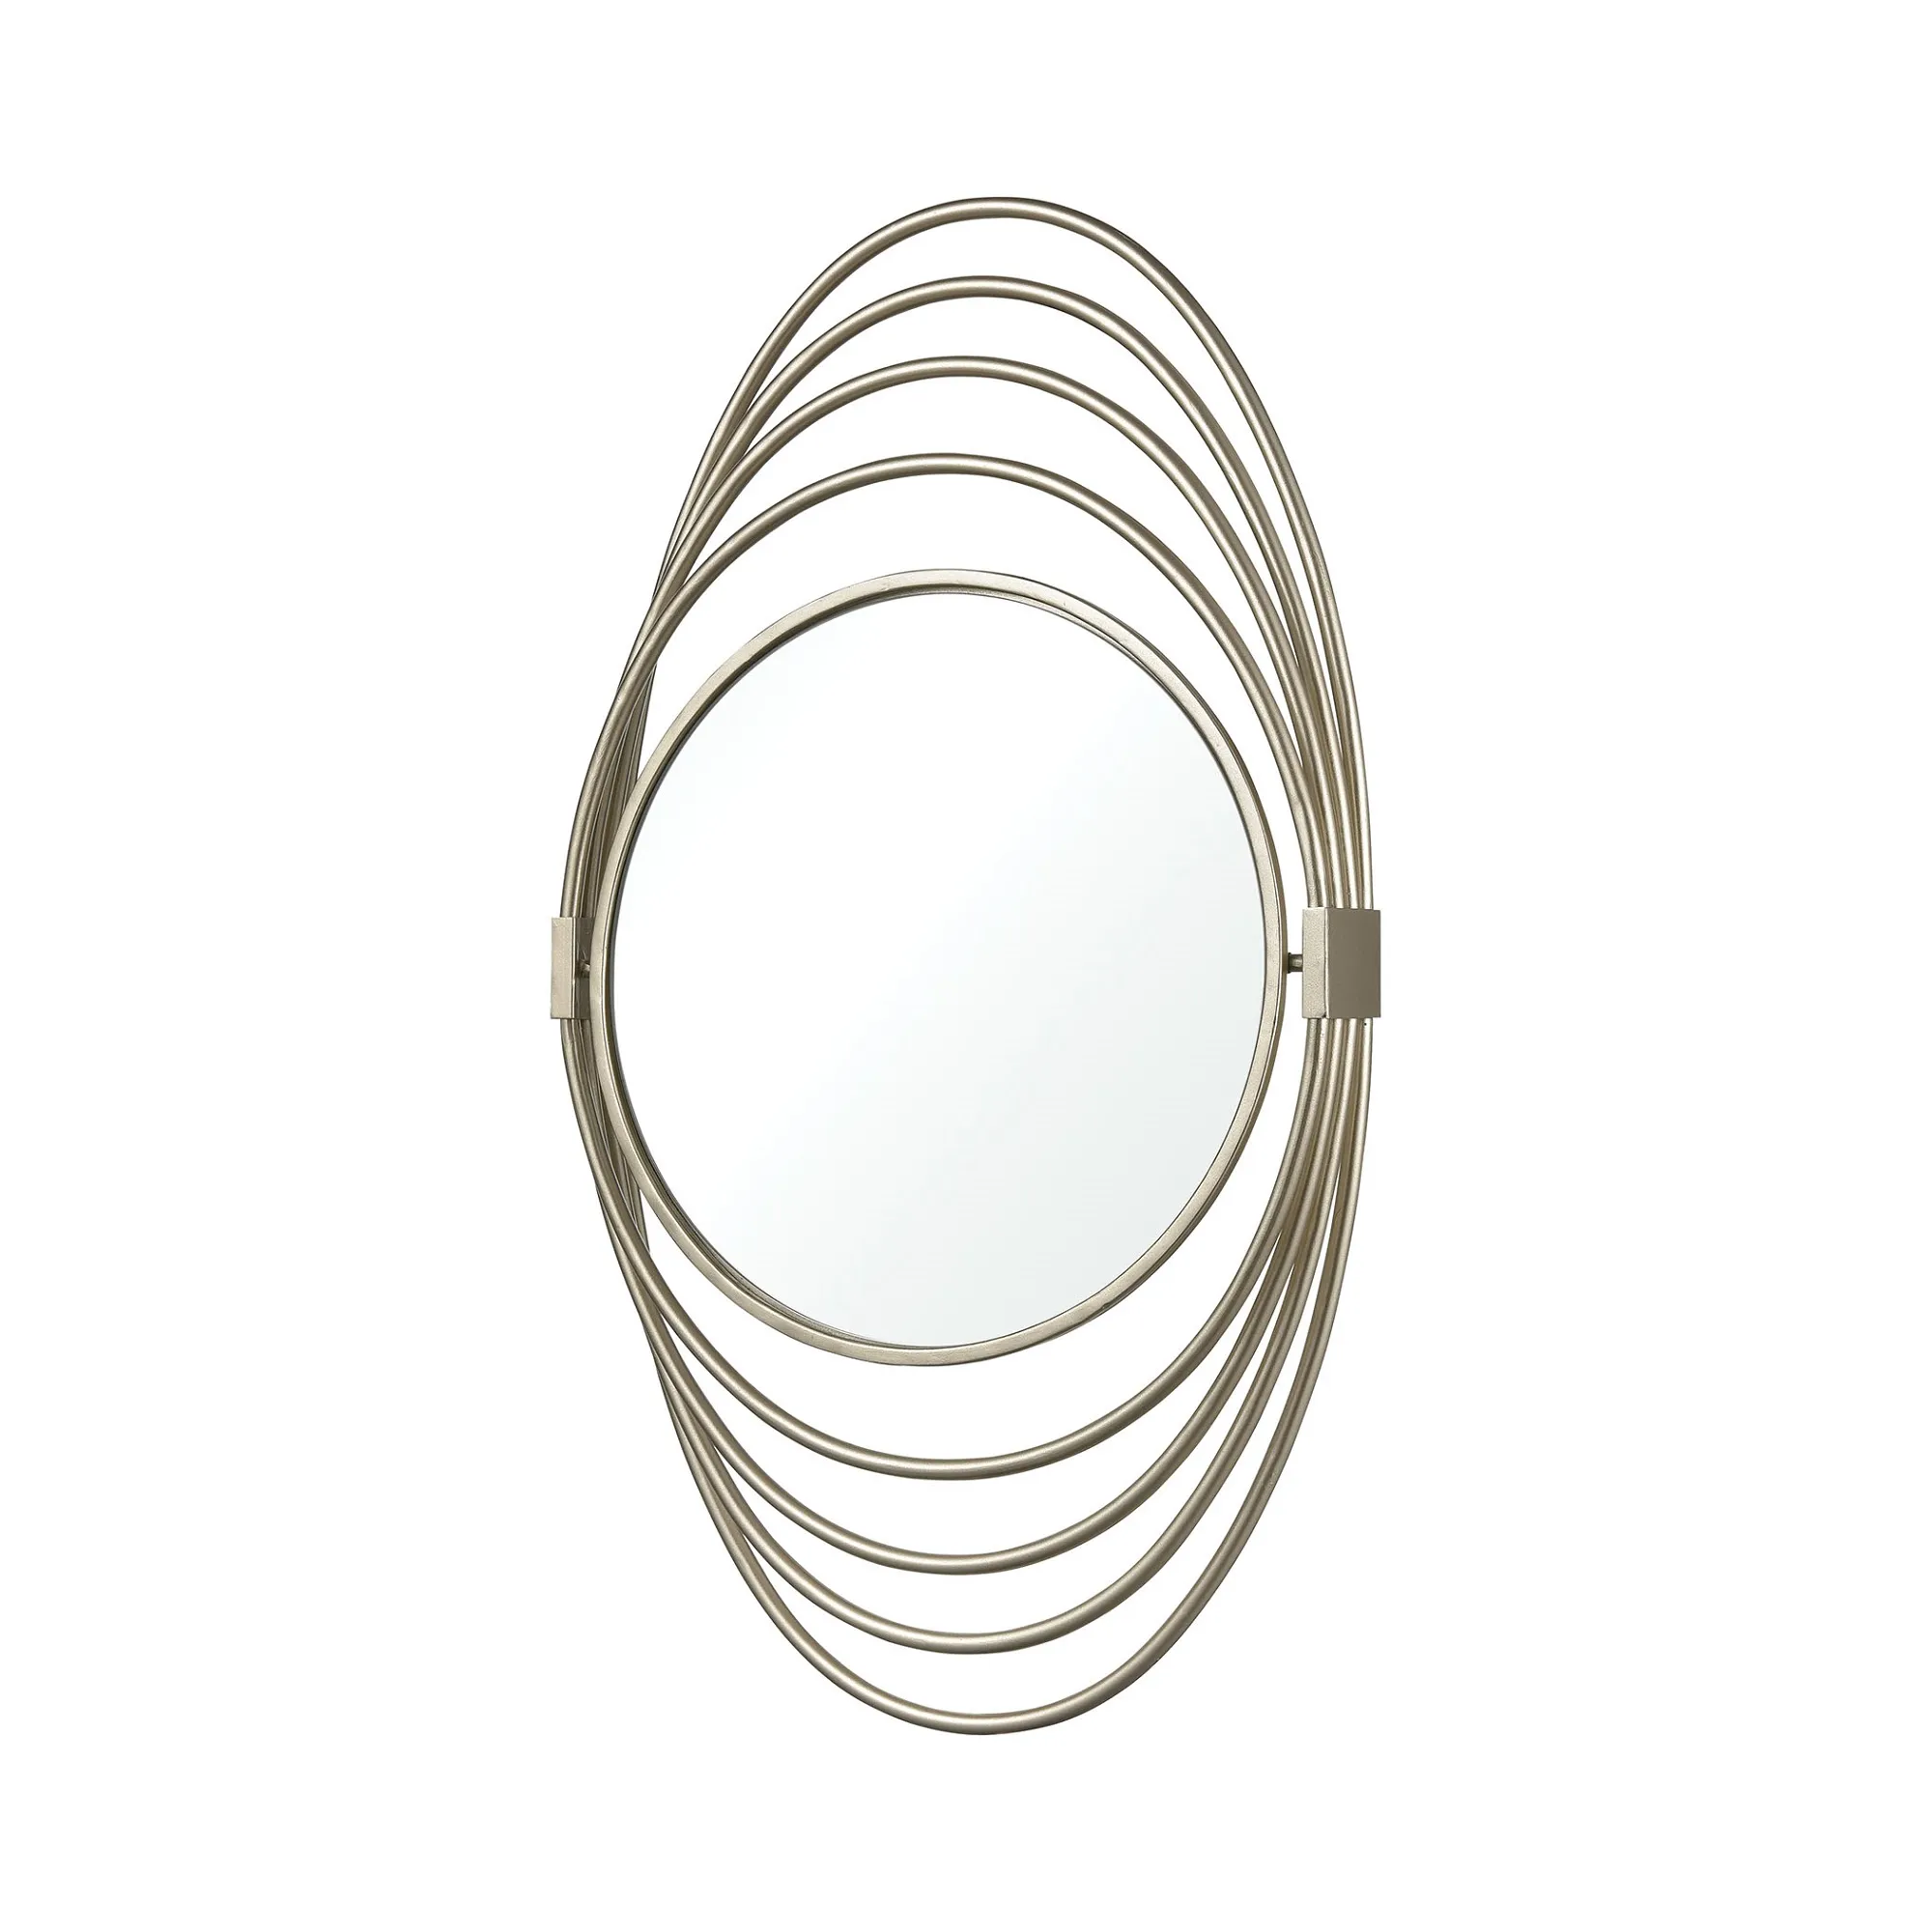 27" Silver Multi-Rings Design Round Wall Mirror Art Deco